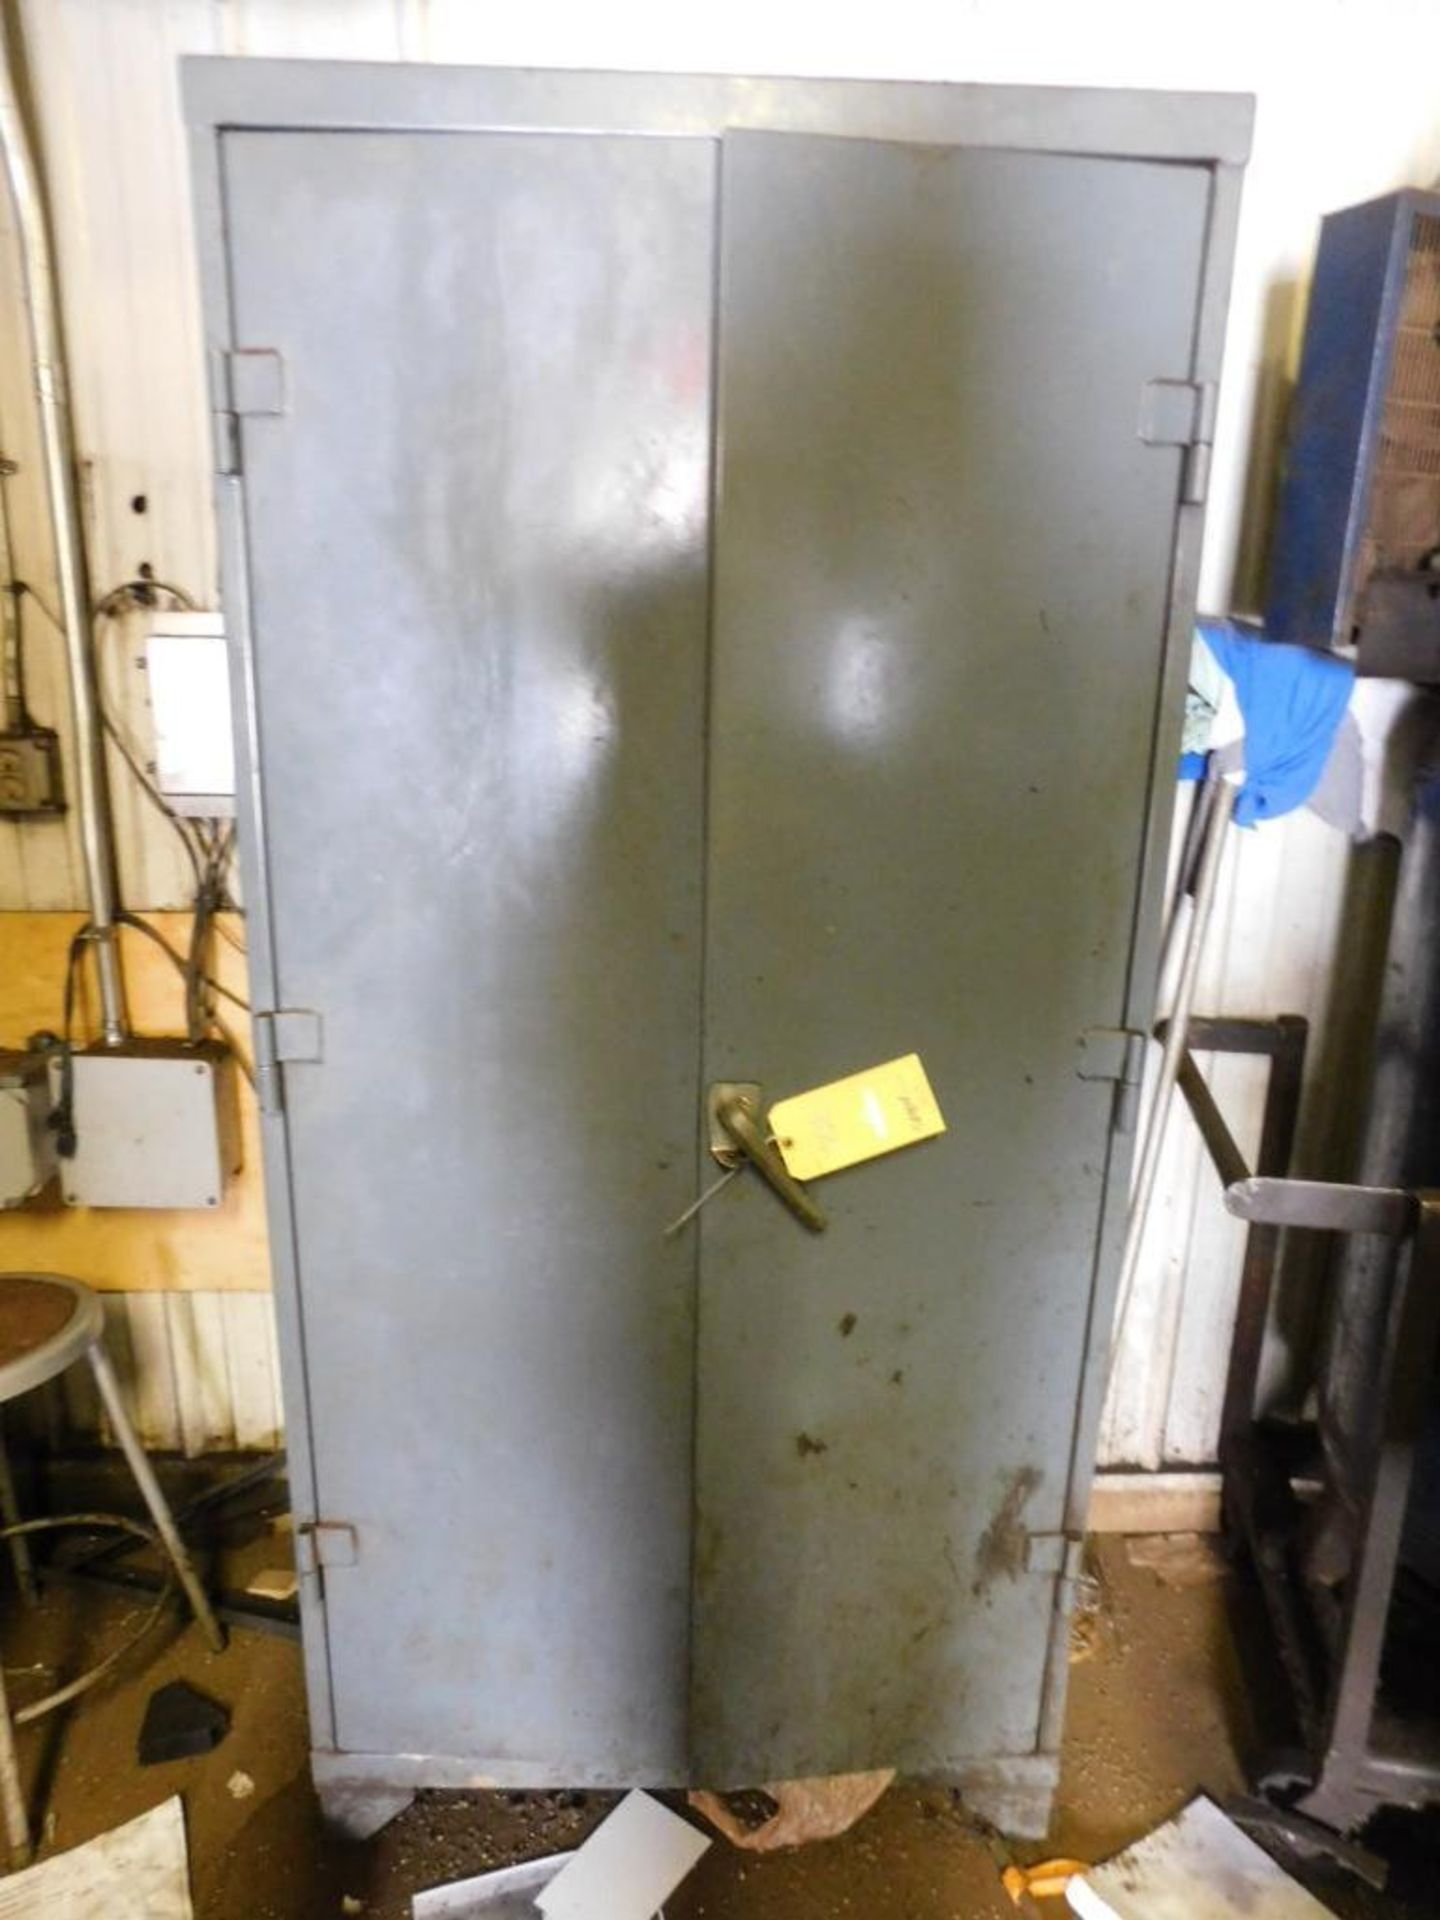 36 in. x 76 in. x 18 in. 2-Door Steel Cabinet, Contents not Included (Baler Building) - Image 2 of 2